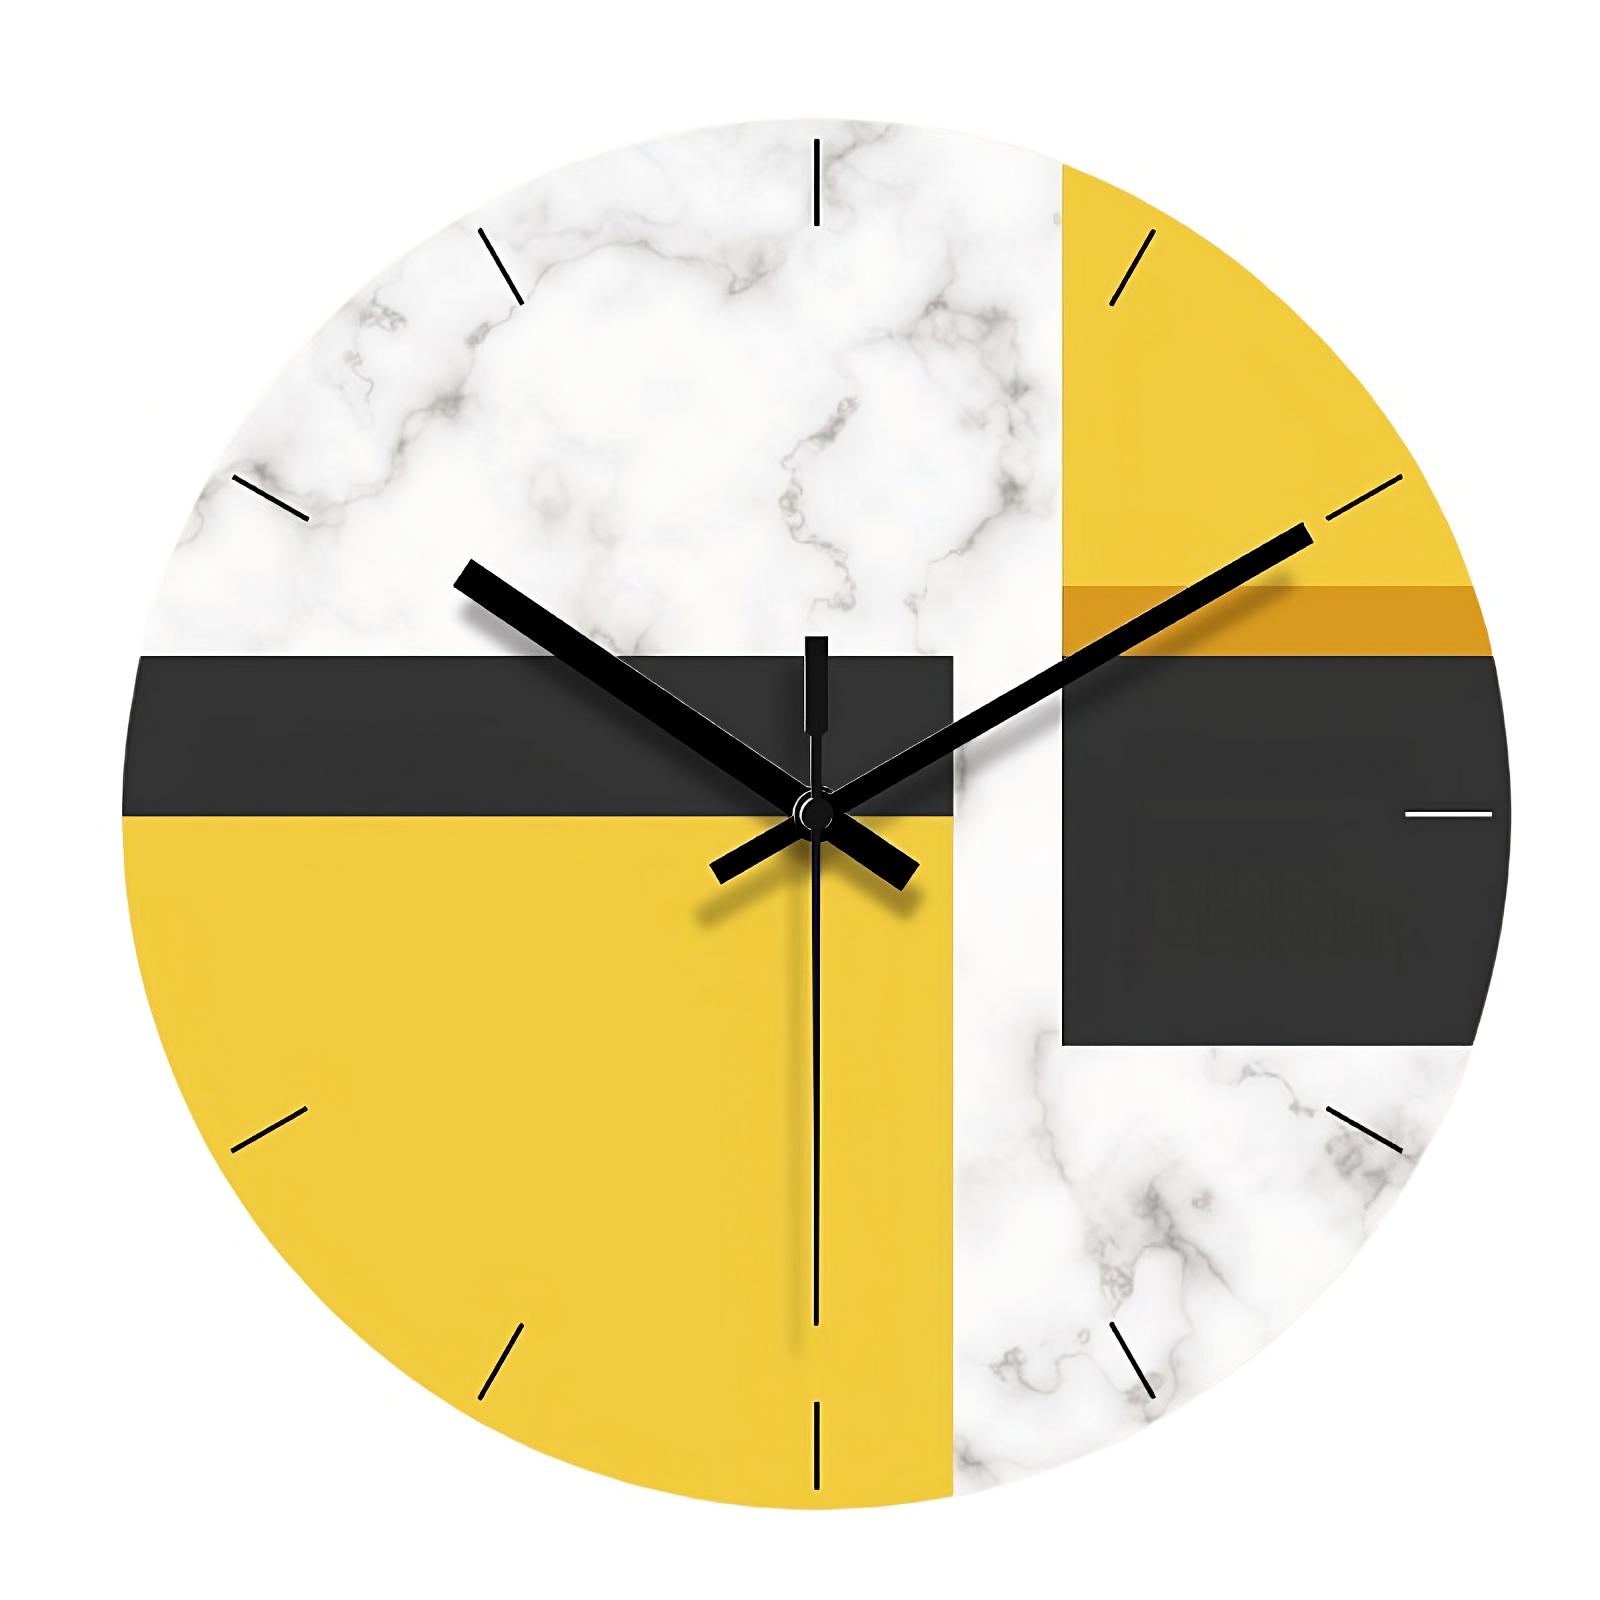 Orologio moderno astratto - Modello giallo - Vista frontale - Decorazione d'interni unica.